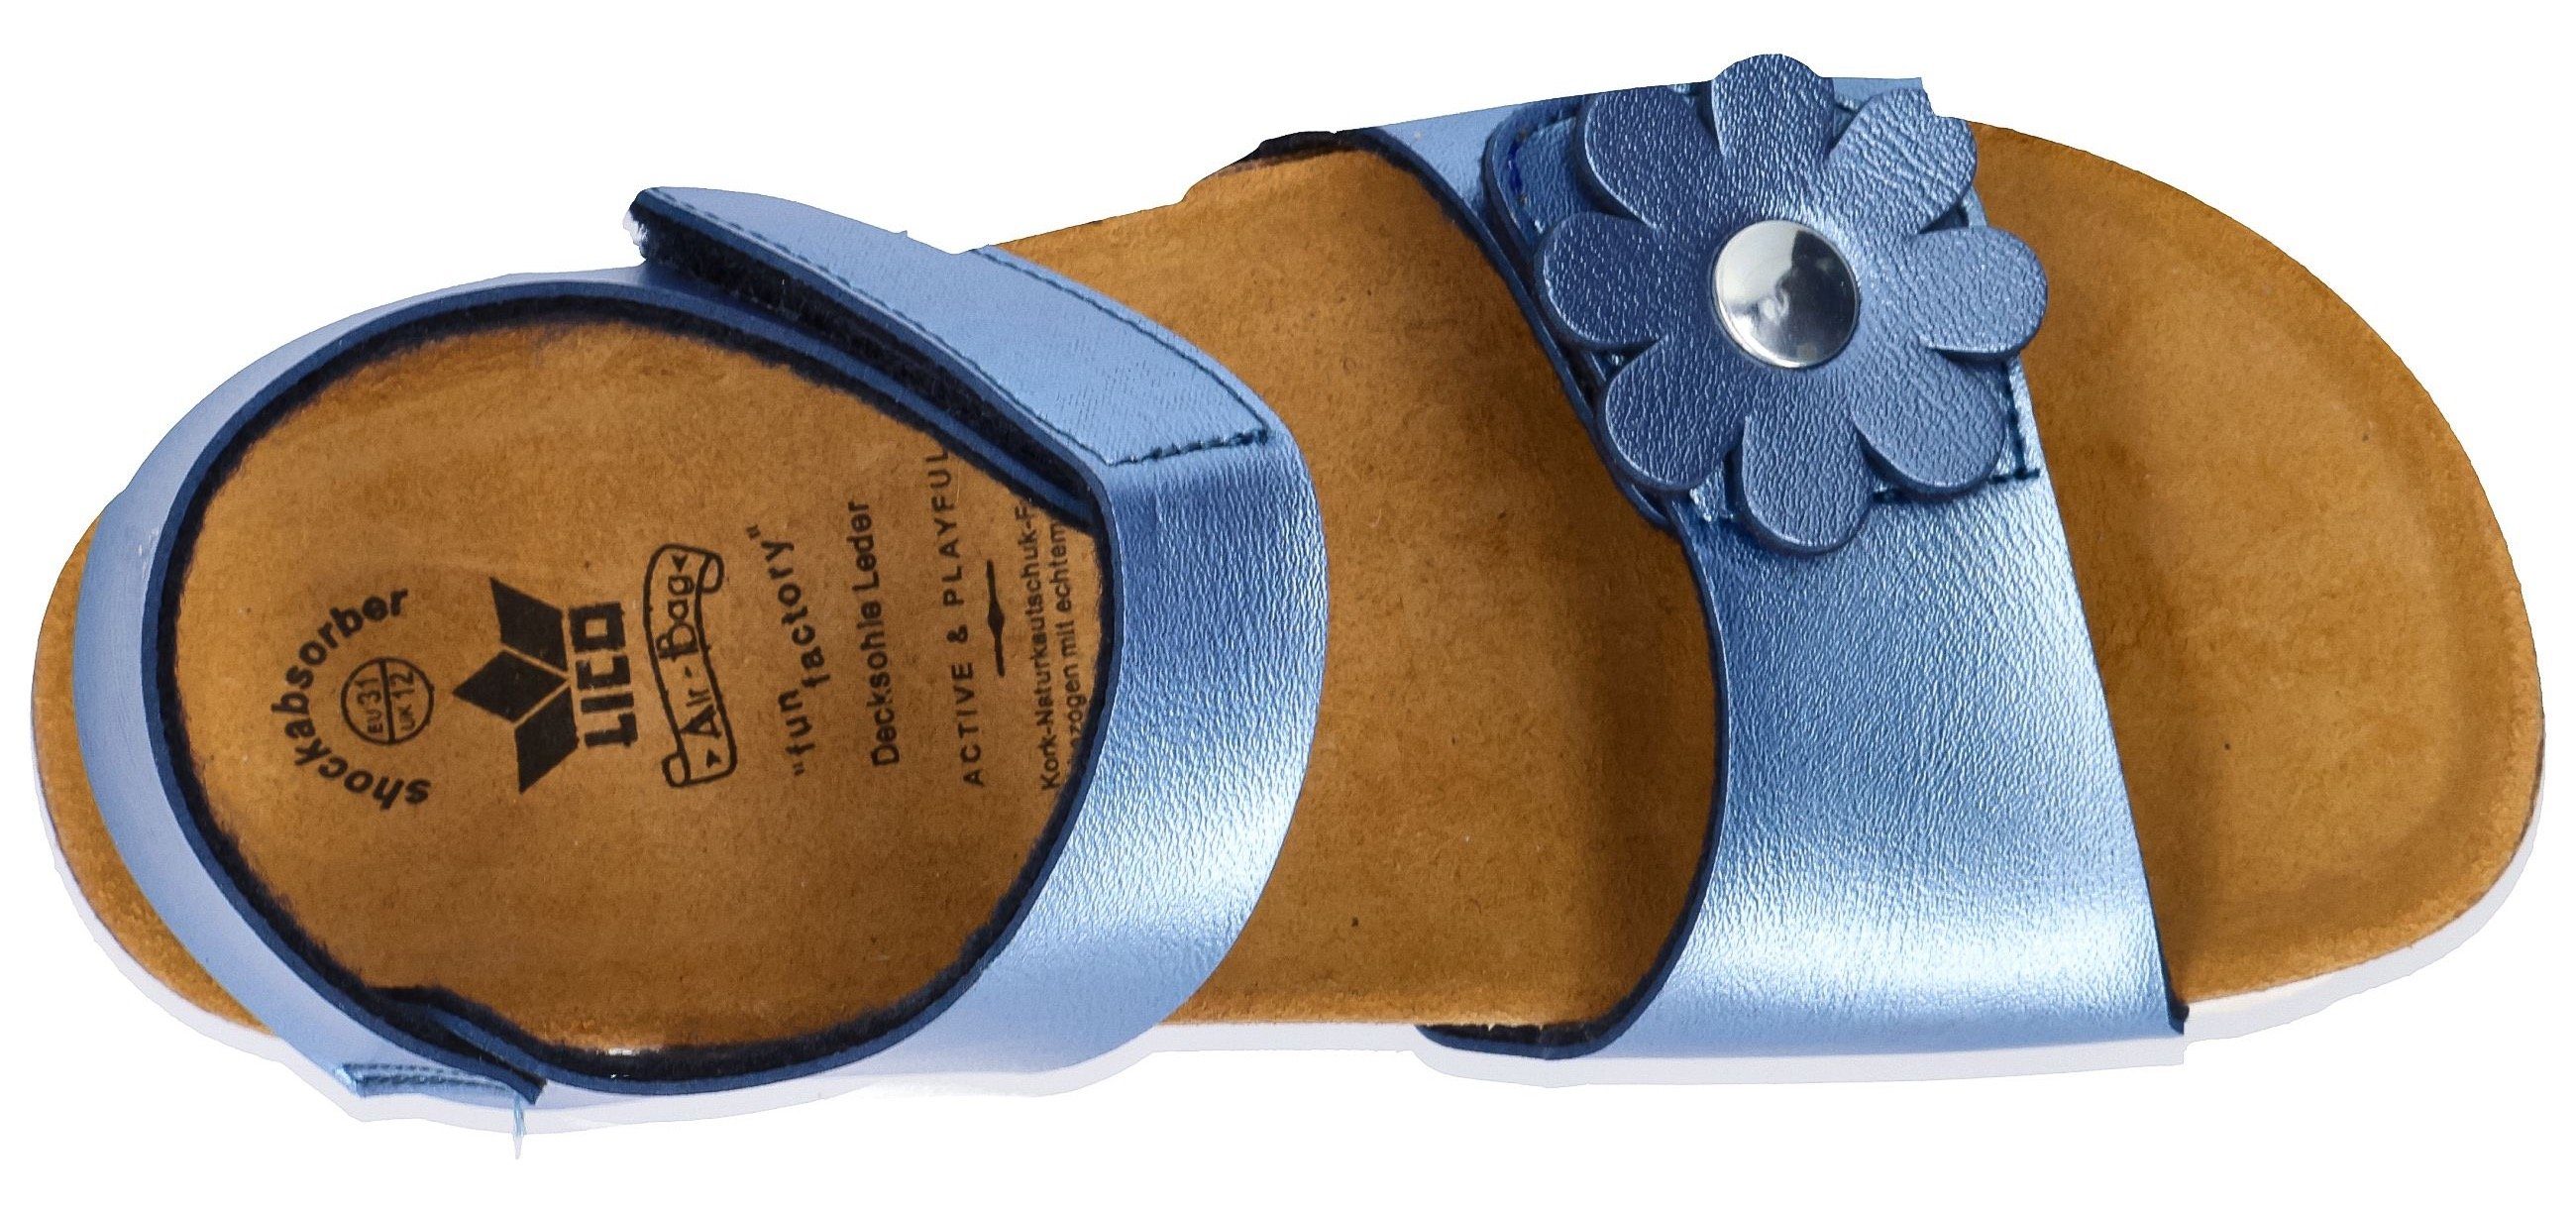 Lico blau-metallic Florent V Sandale mit Klettverschluss